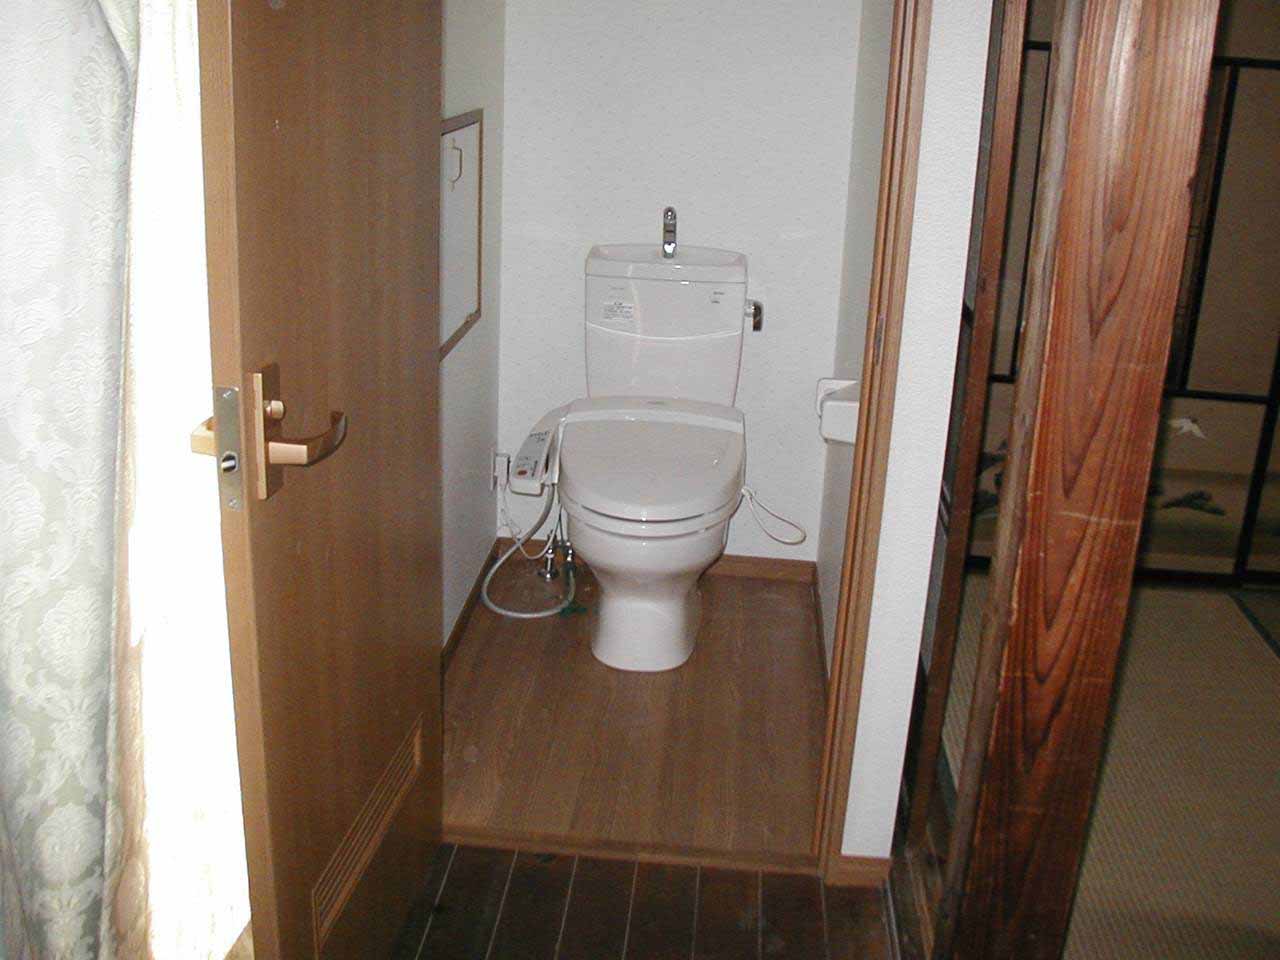 有効活用出来ていなかった廊下部分にトイレを新設しました。 